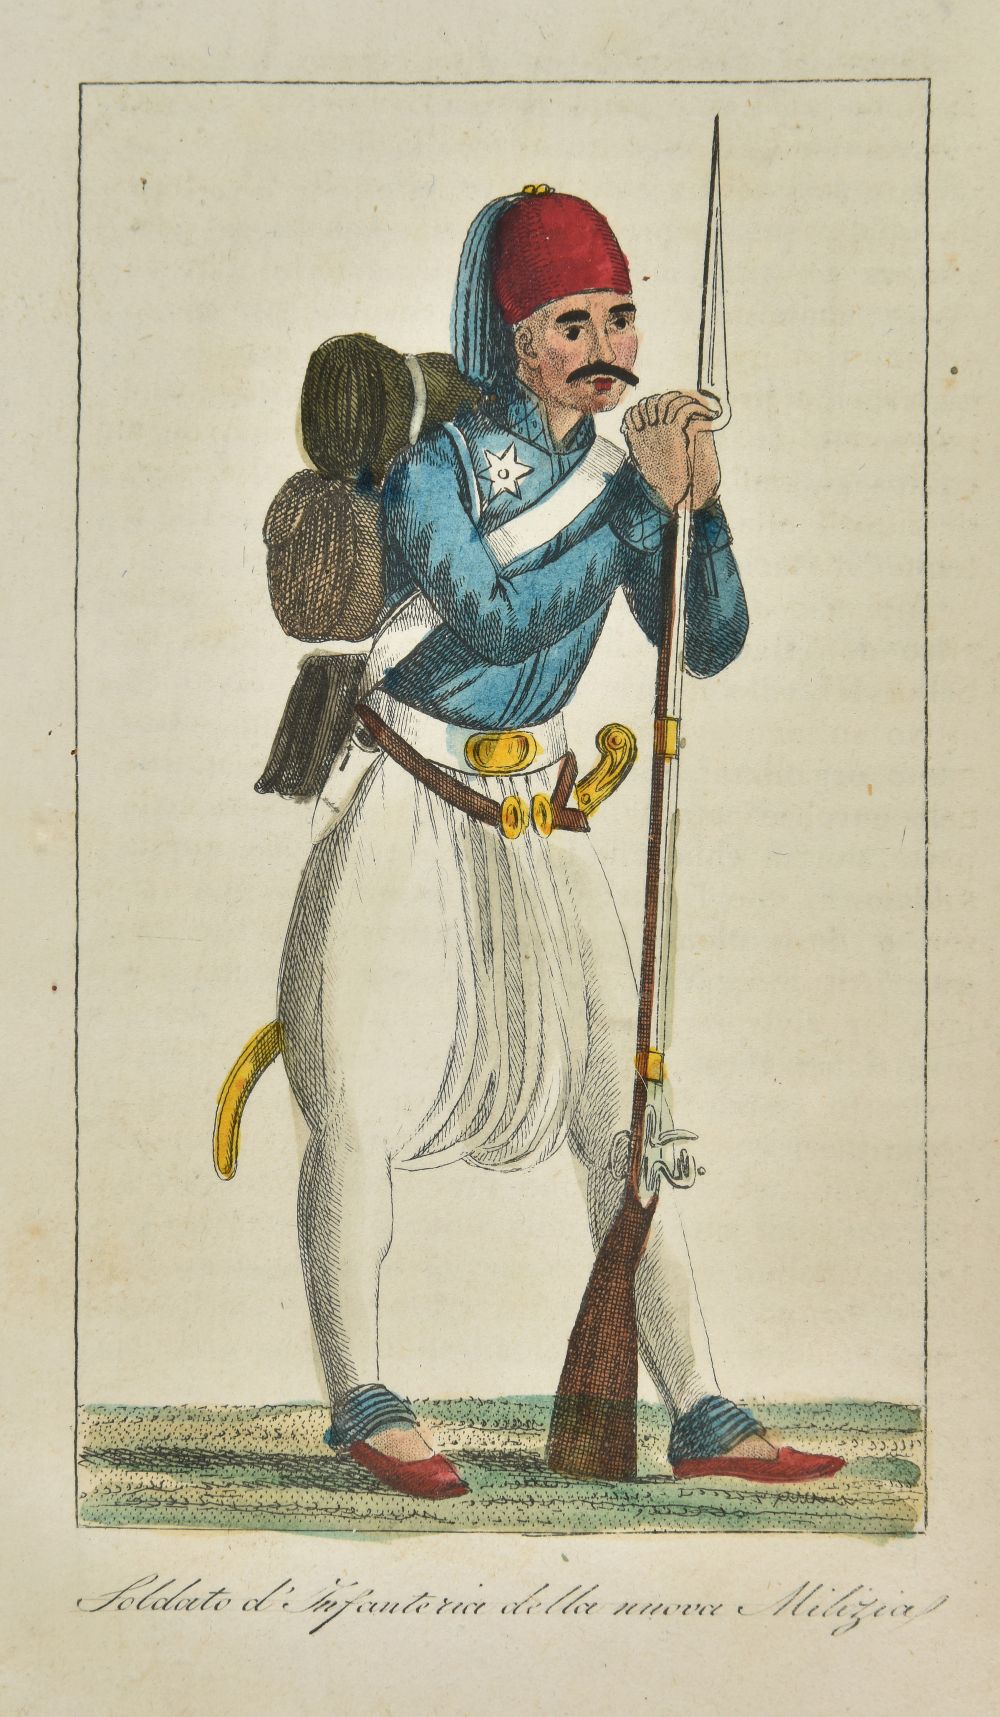 Margaroli (Giovanni Battista). La Turchia ovvero l'impero Ottomano, 1st edition, Milan, 1829